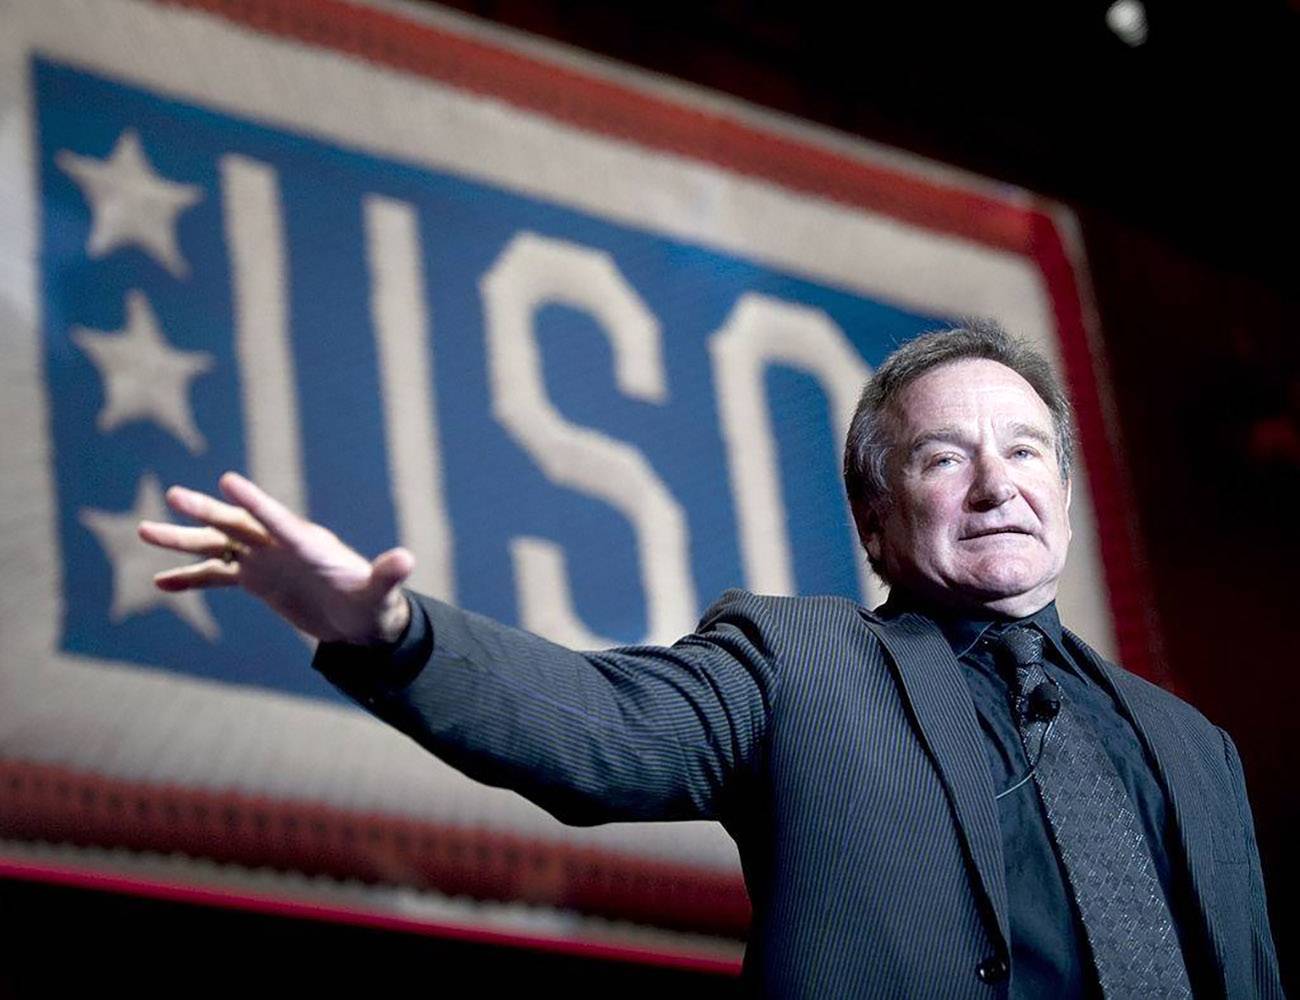 El actor y comediante Robin Williams, que se suicidó en 2014